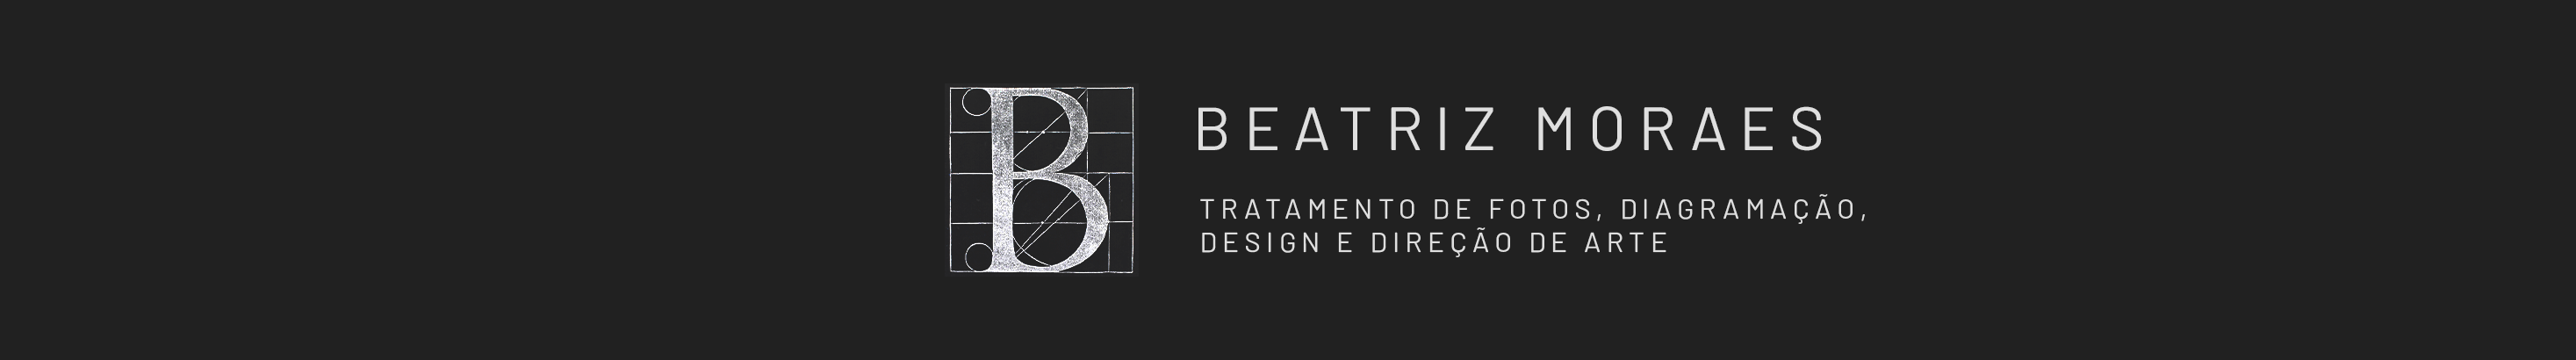 Beatriz Moraes's profile banner